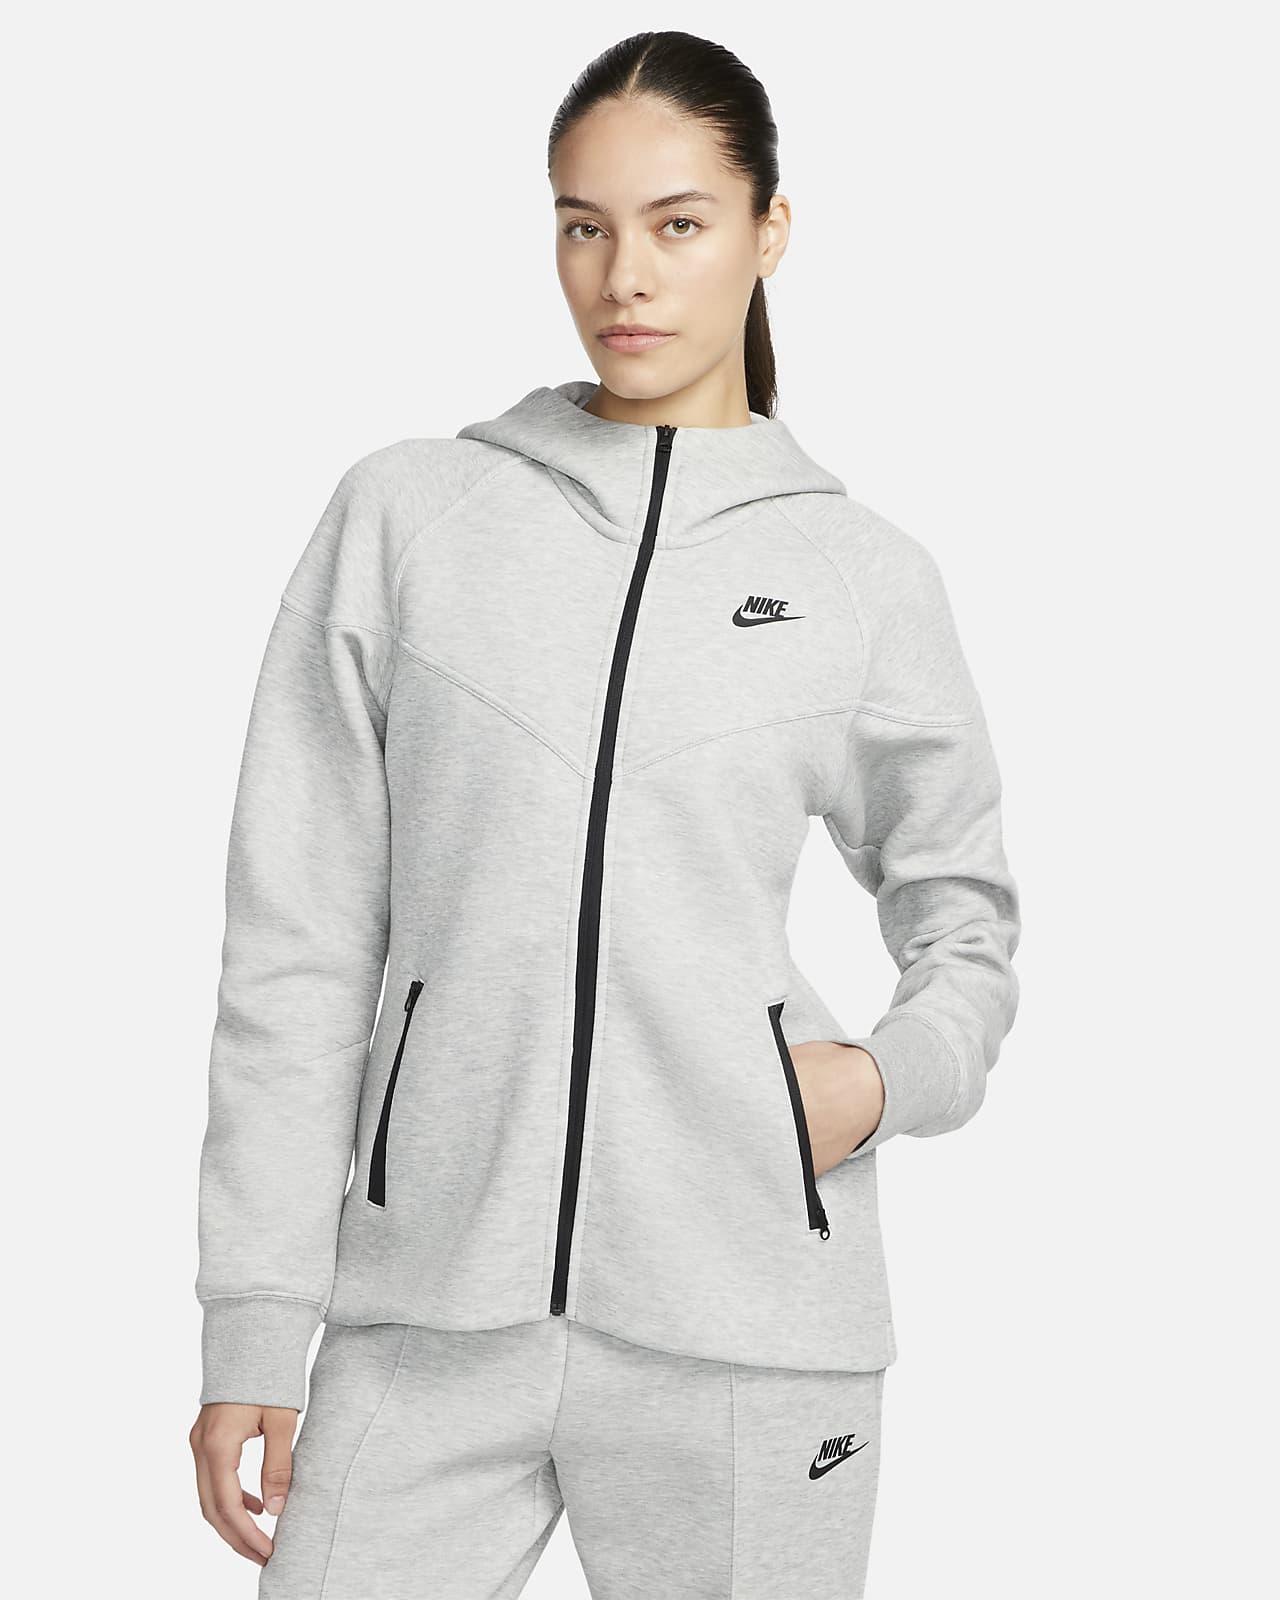 Γυναικεία μπλούζα με κουκούλα και φερμουάρ Nike Sportswear Tech Fleece Windrunner